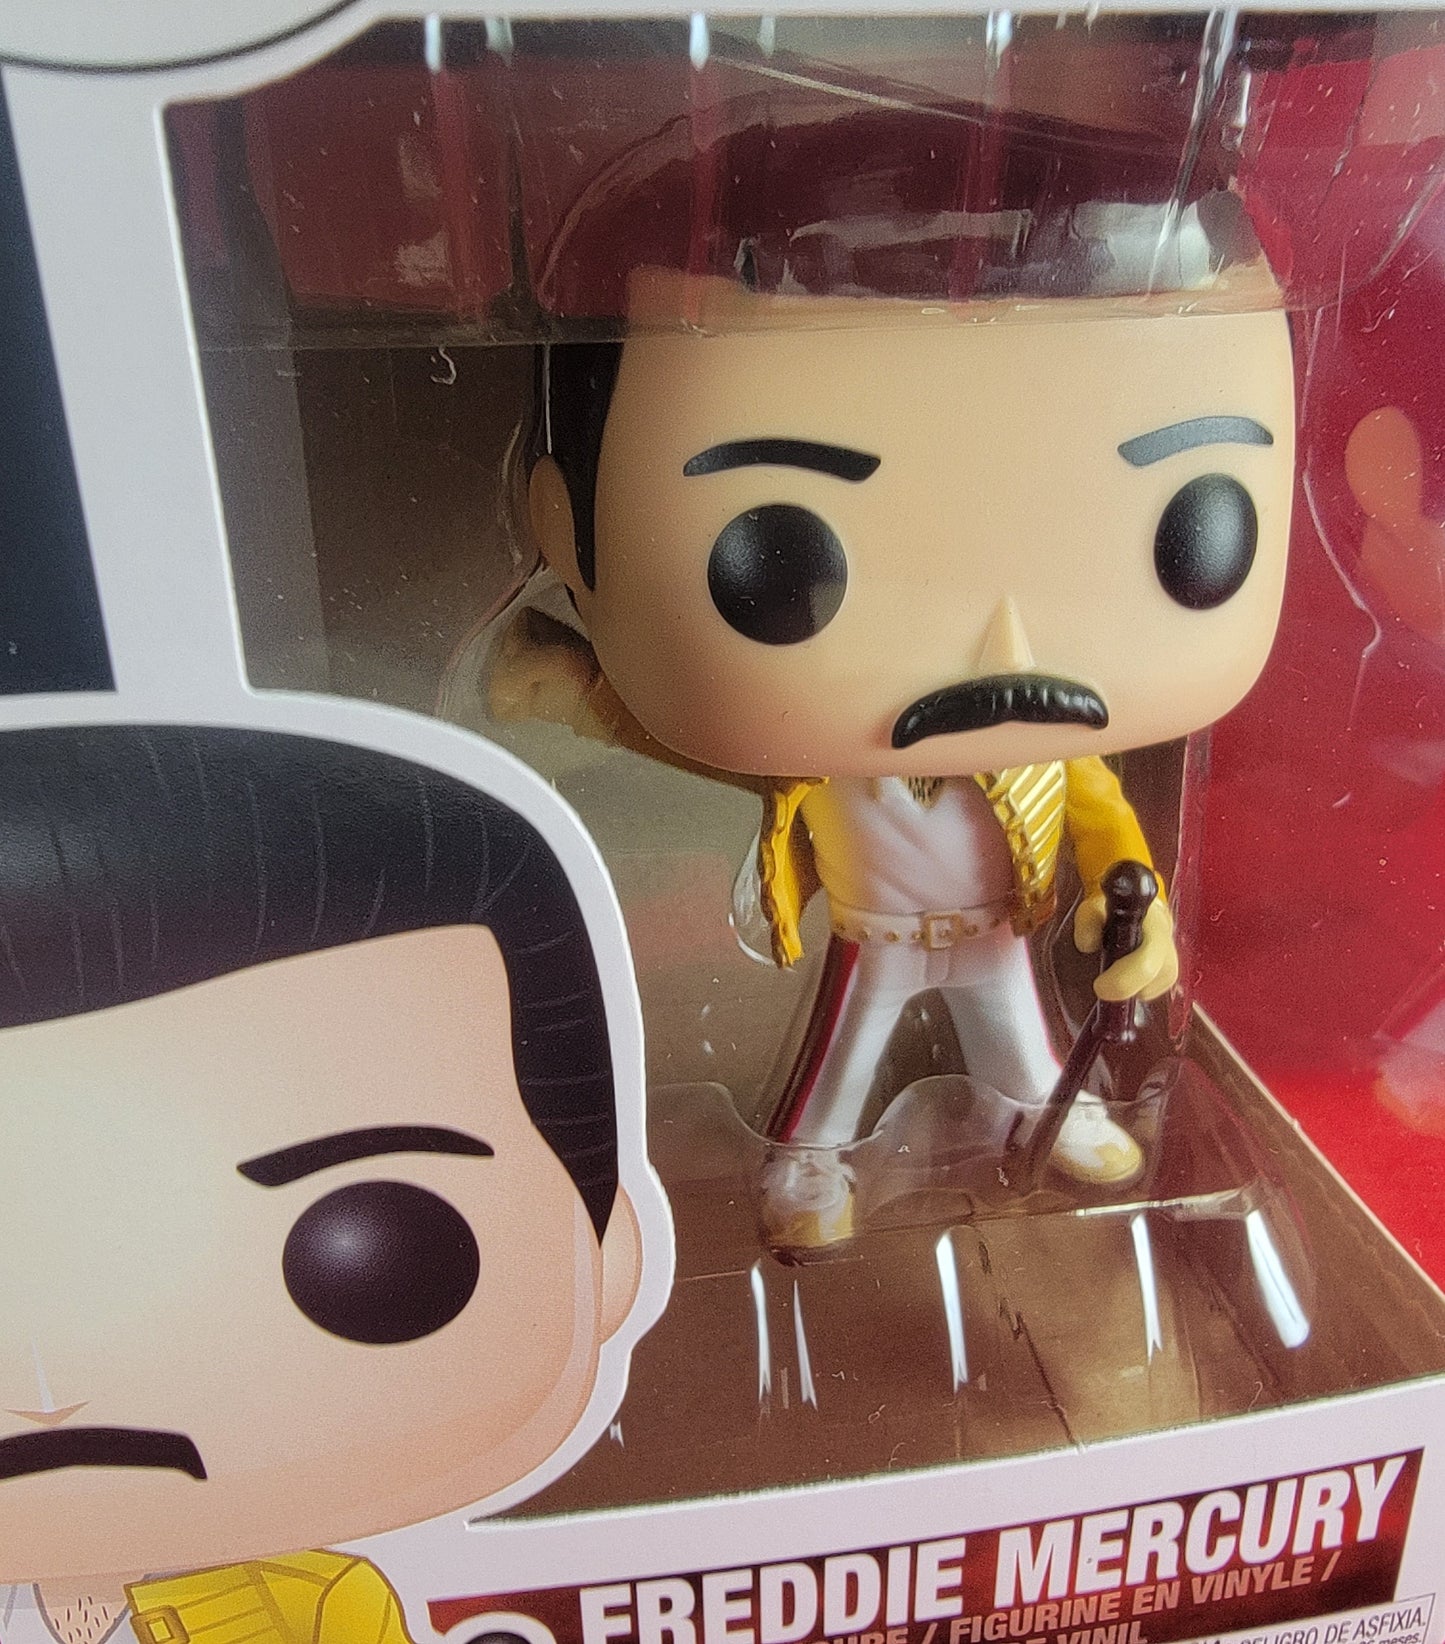 Freddie Mercury funko # 96 (nib)
With pop protector